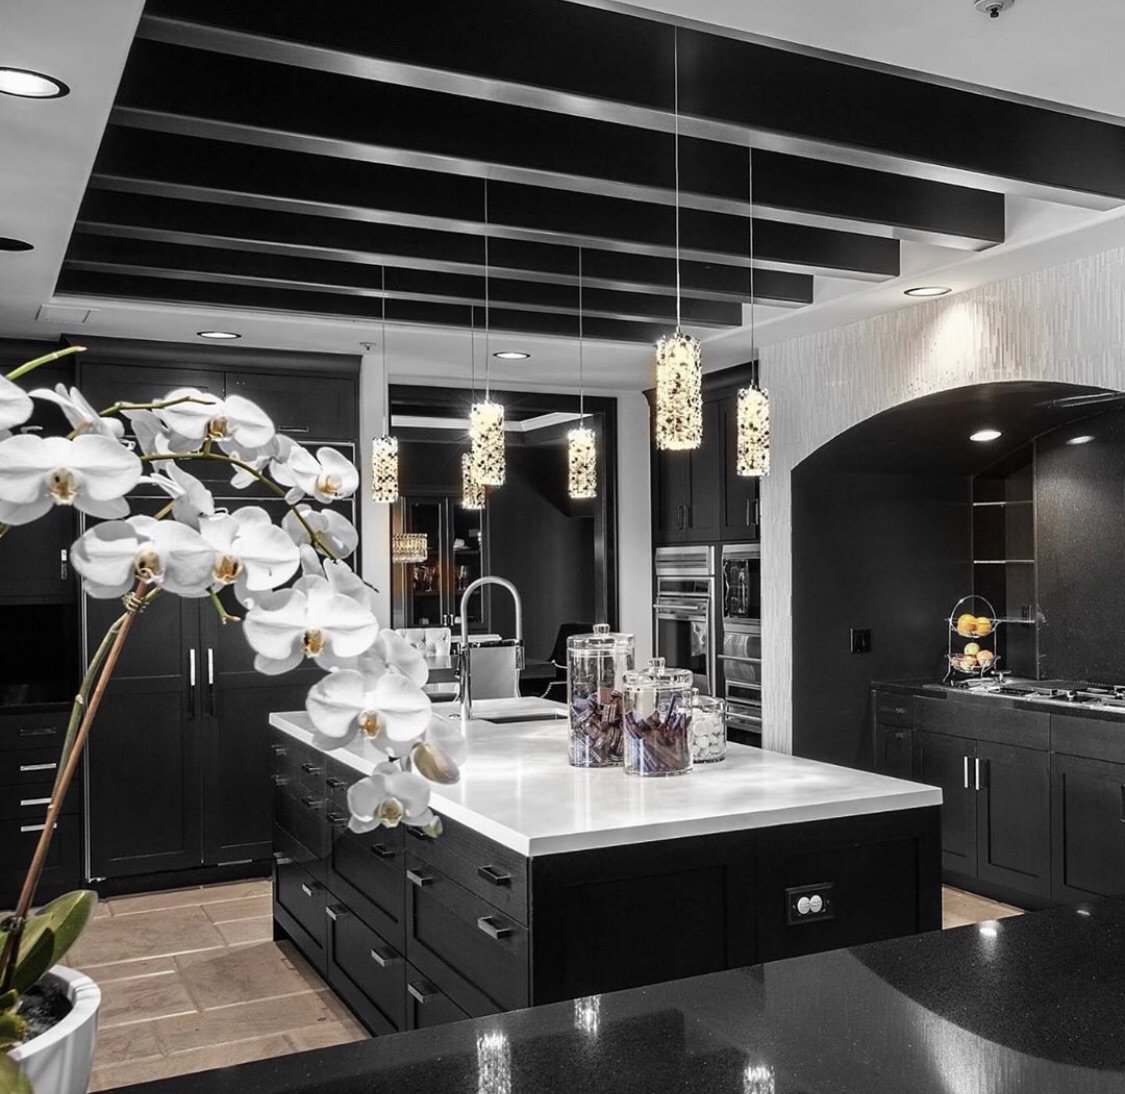 Кухня гостиная черная. Кухня в черном стиле. Кухня-гостиная в черно-белых тонах. Кухня красивая в черном стиле современная. Кухня в бело черных тонах.